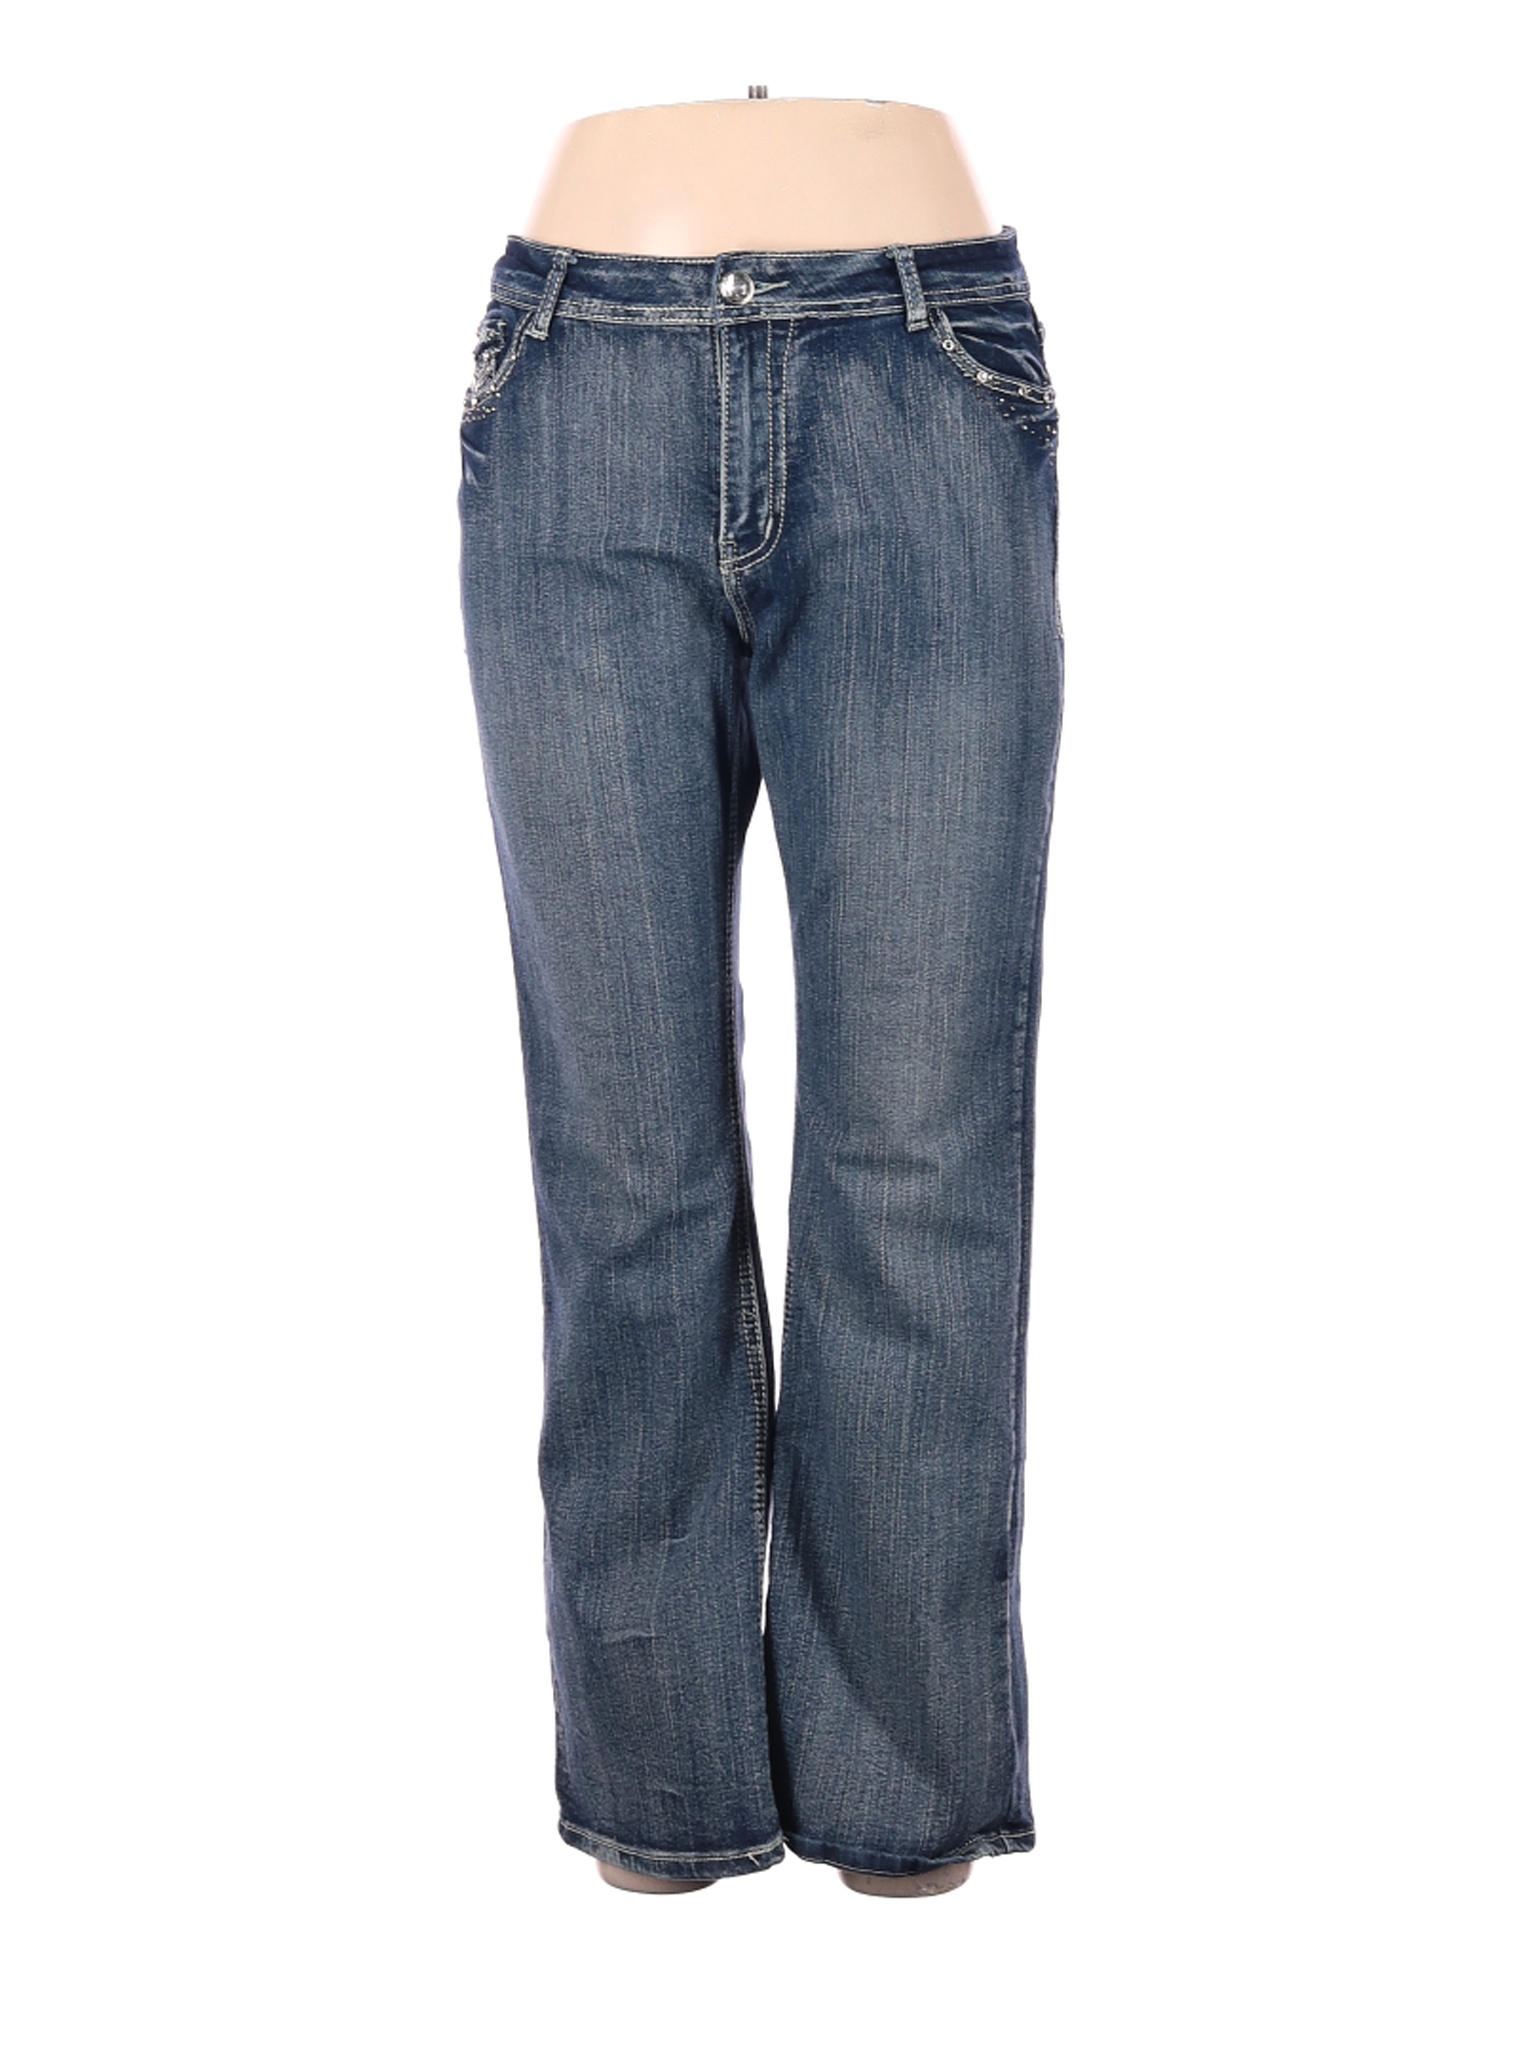 Roz & Ali Women Blue Jeans 14 | eBay